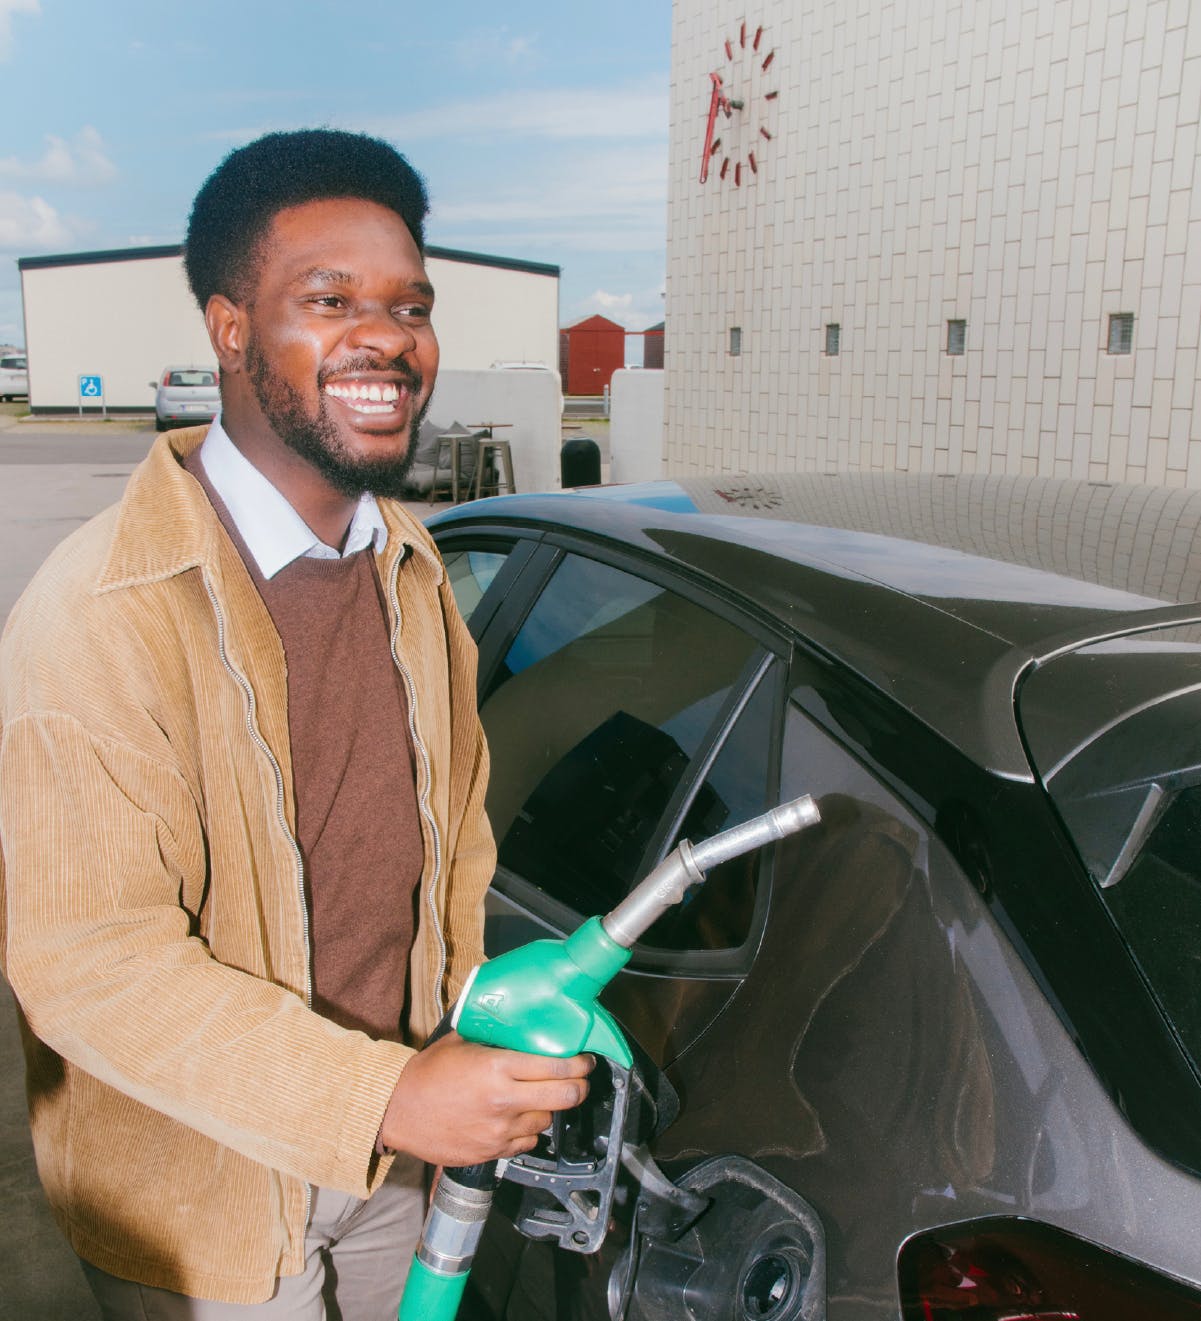 En glad medarbejder fylder benzin på sin bil